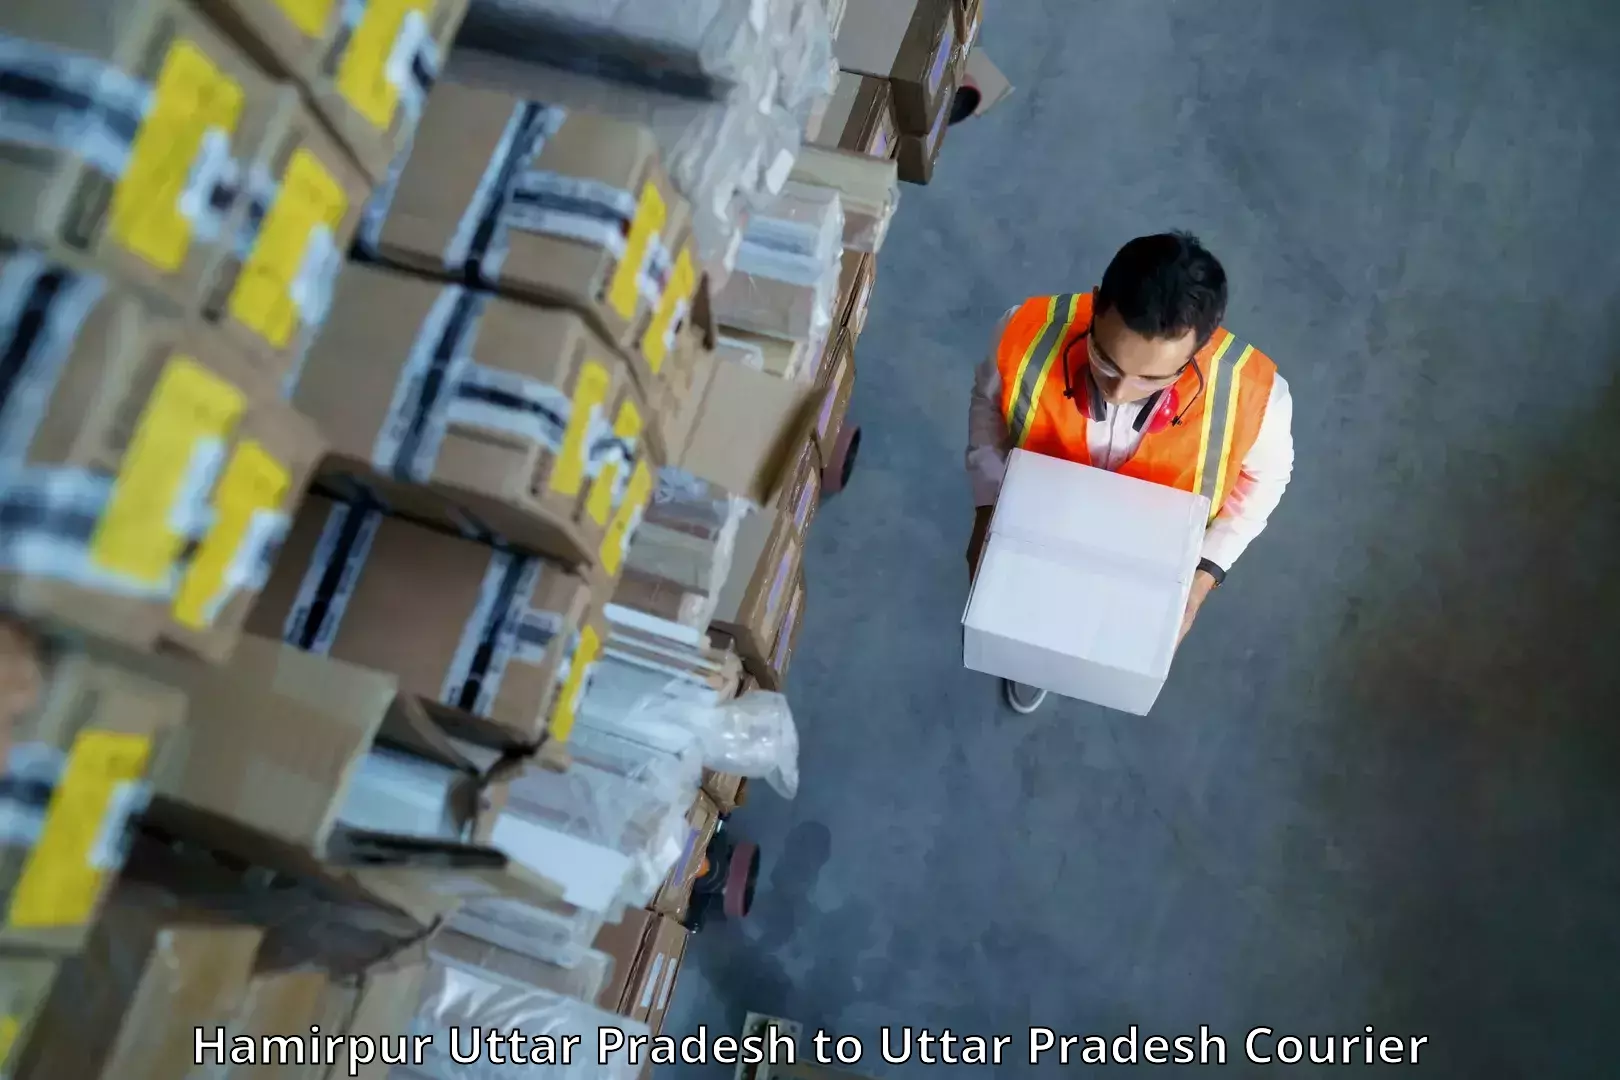 Domestic courier Hamirpur Uttar Pradesh to Khurja